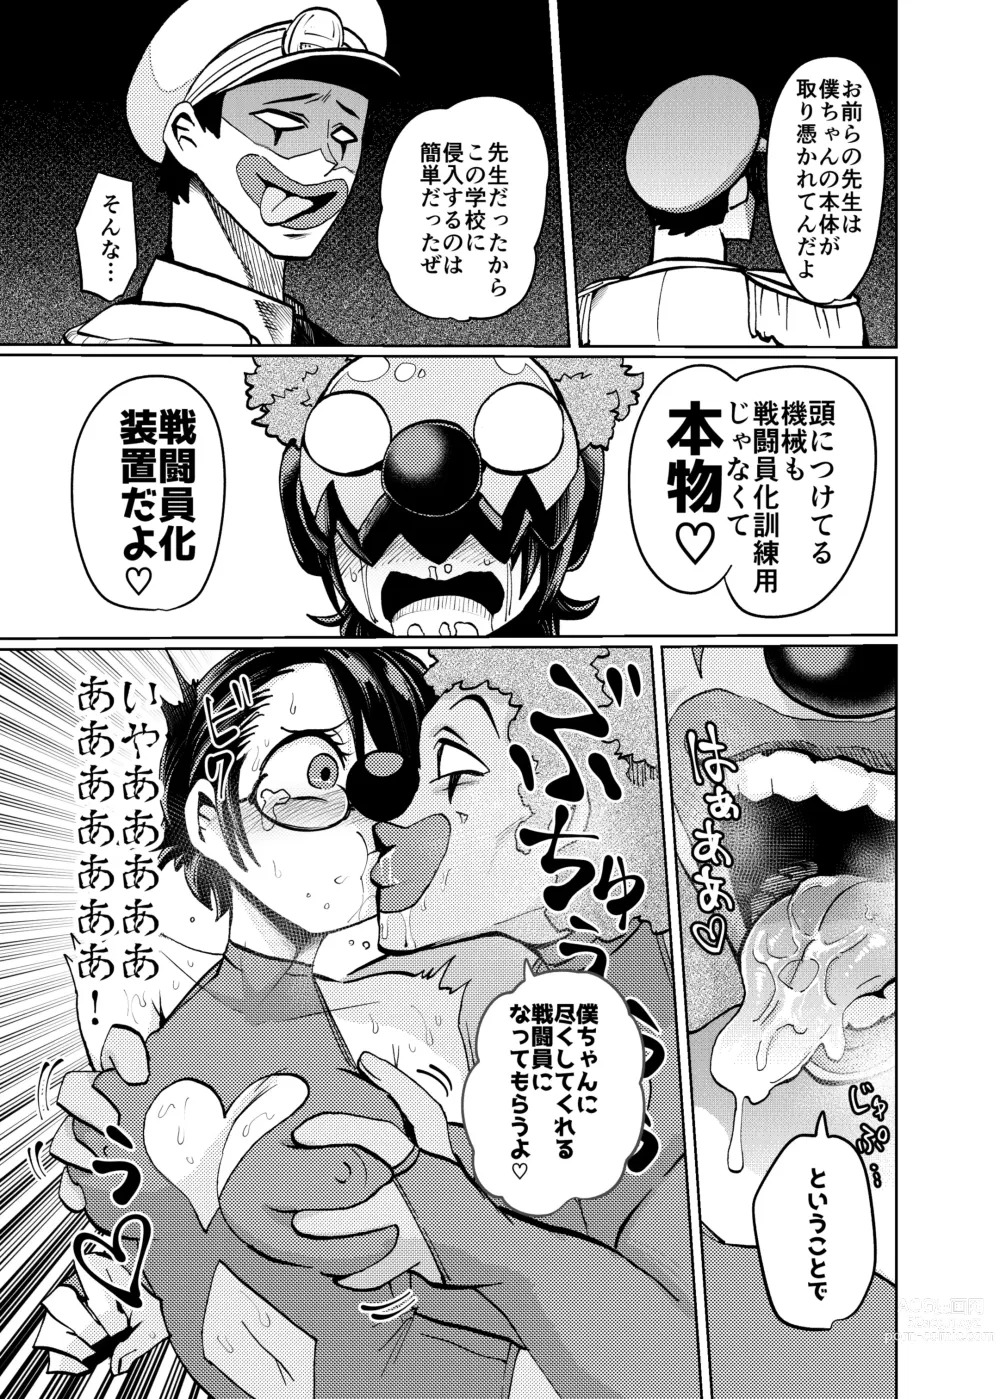 Page 11 of doujinshi Hiroin Gakka wa Aku Ochi ga Hisshuu Kamokudesu